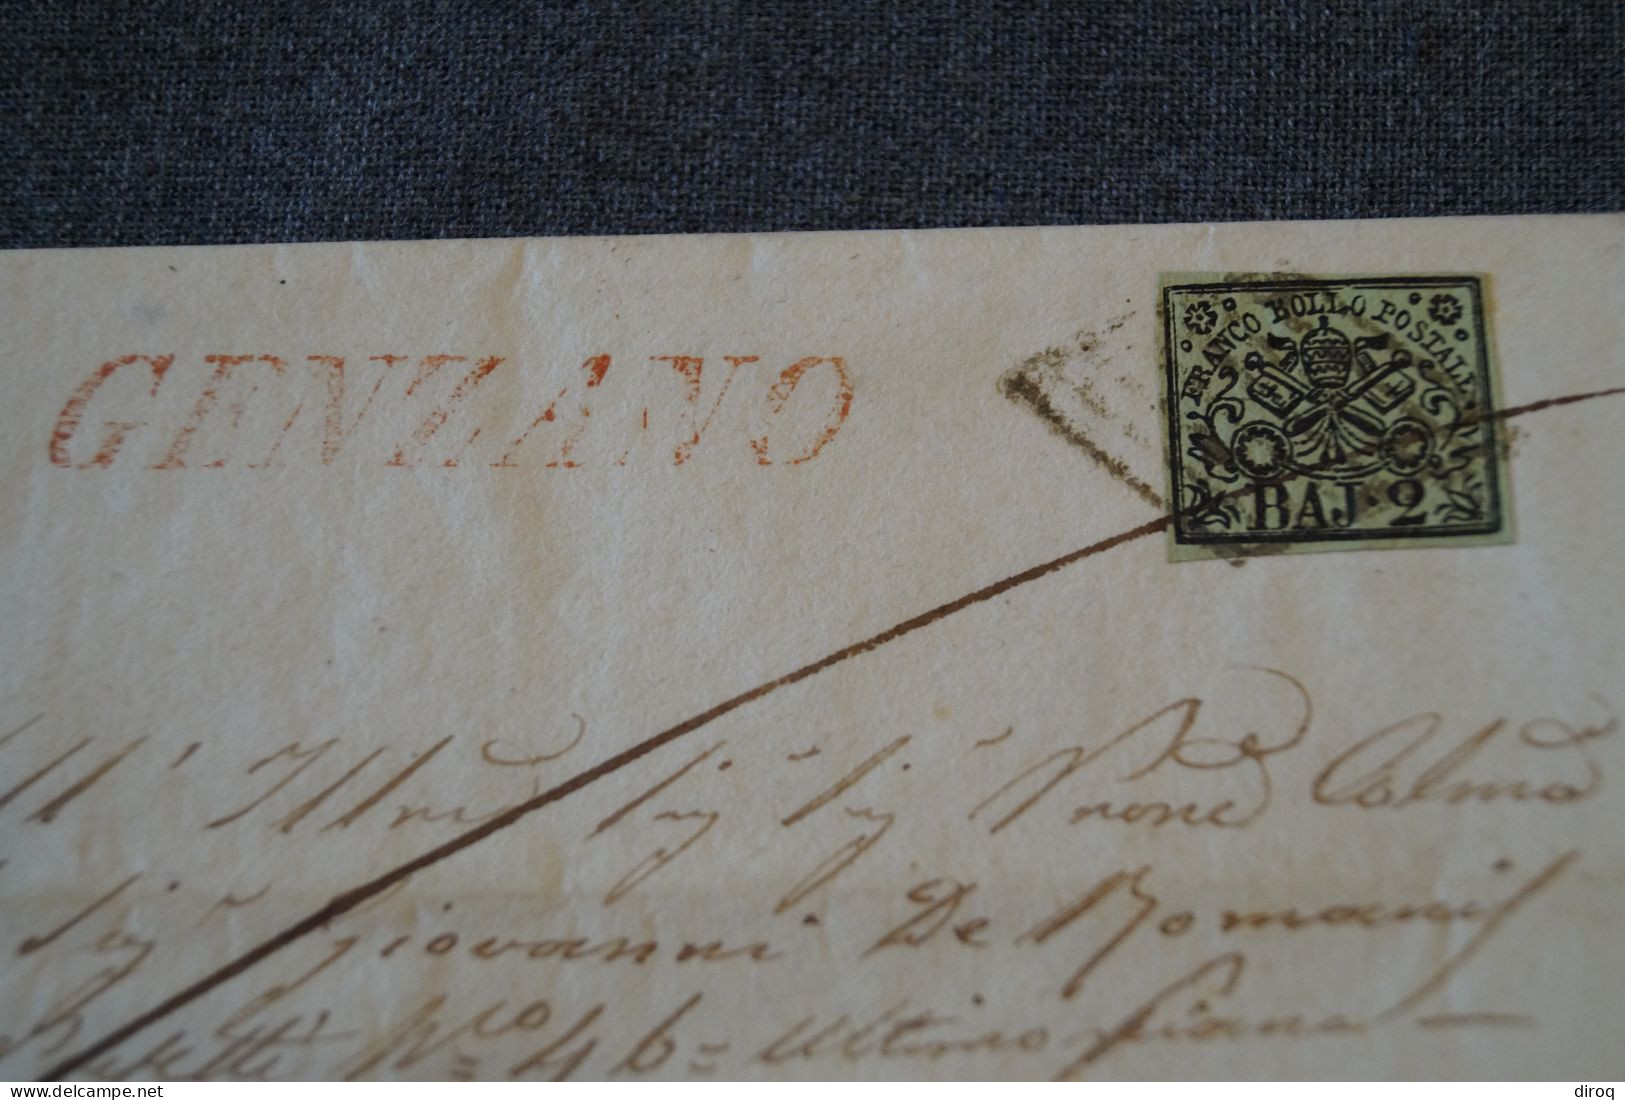 Ancien Envoi Franco Bollo Postale BAJ-2, Italia 1857,courrier à Identifier,pour Collection - Etats Pontificaux